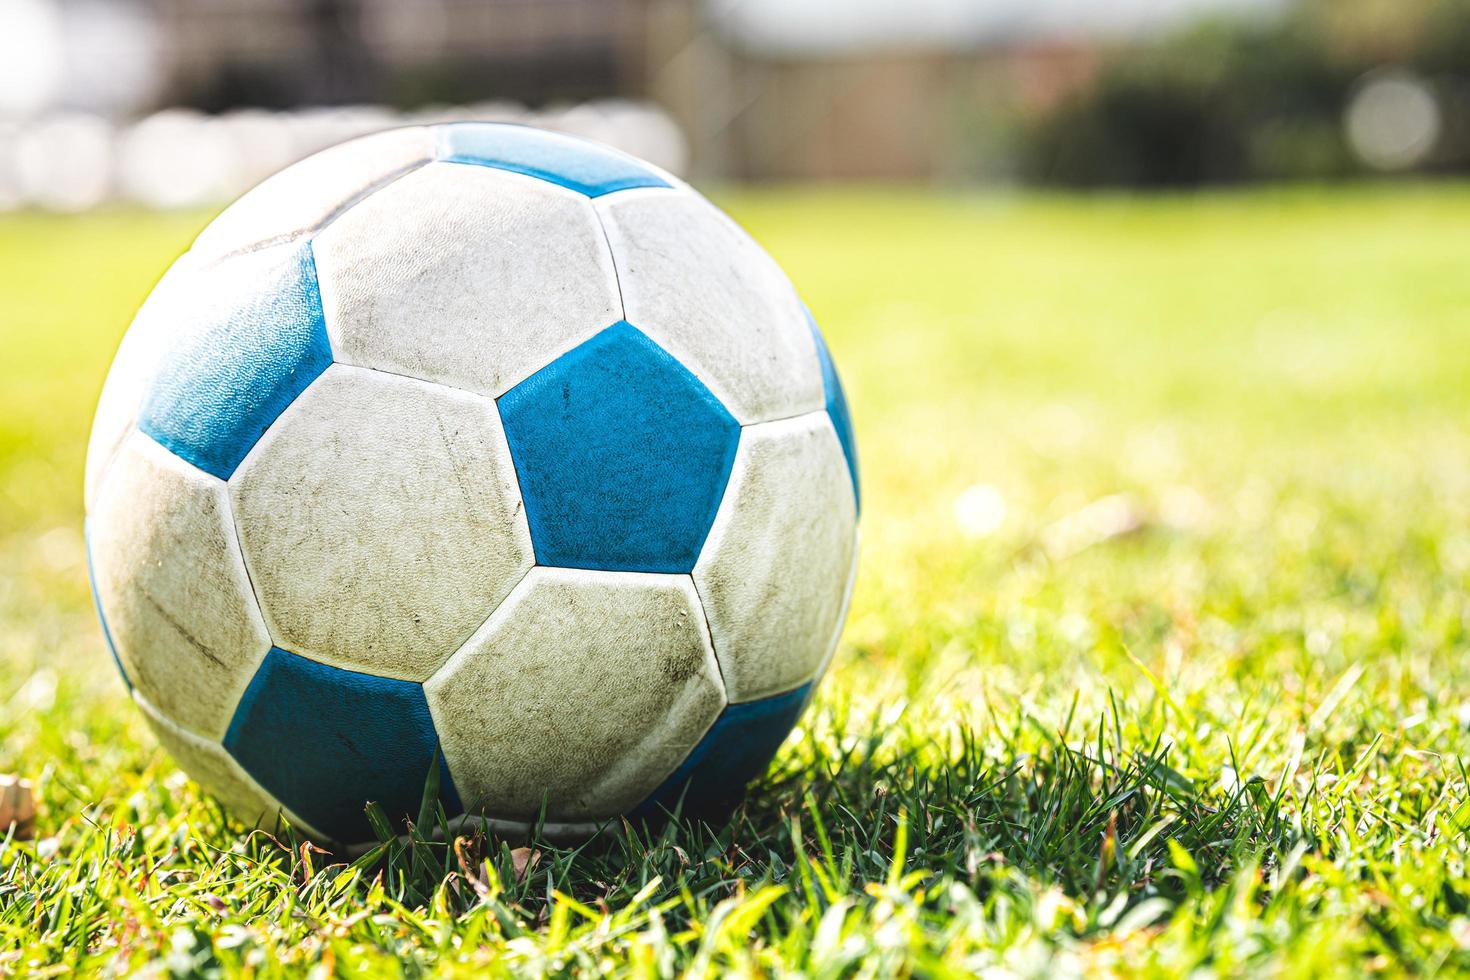 bola blanco-azul sobre la hierba verde. copie el espacio. verano o primavera. caliente sol. fútbol deportivo. foto